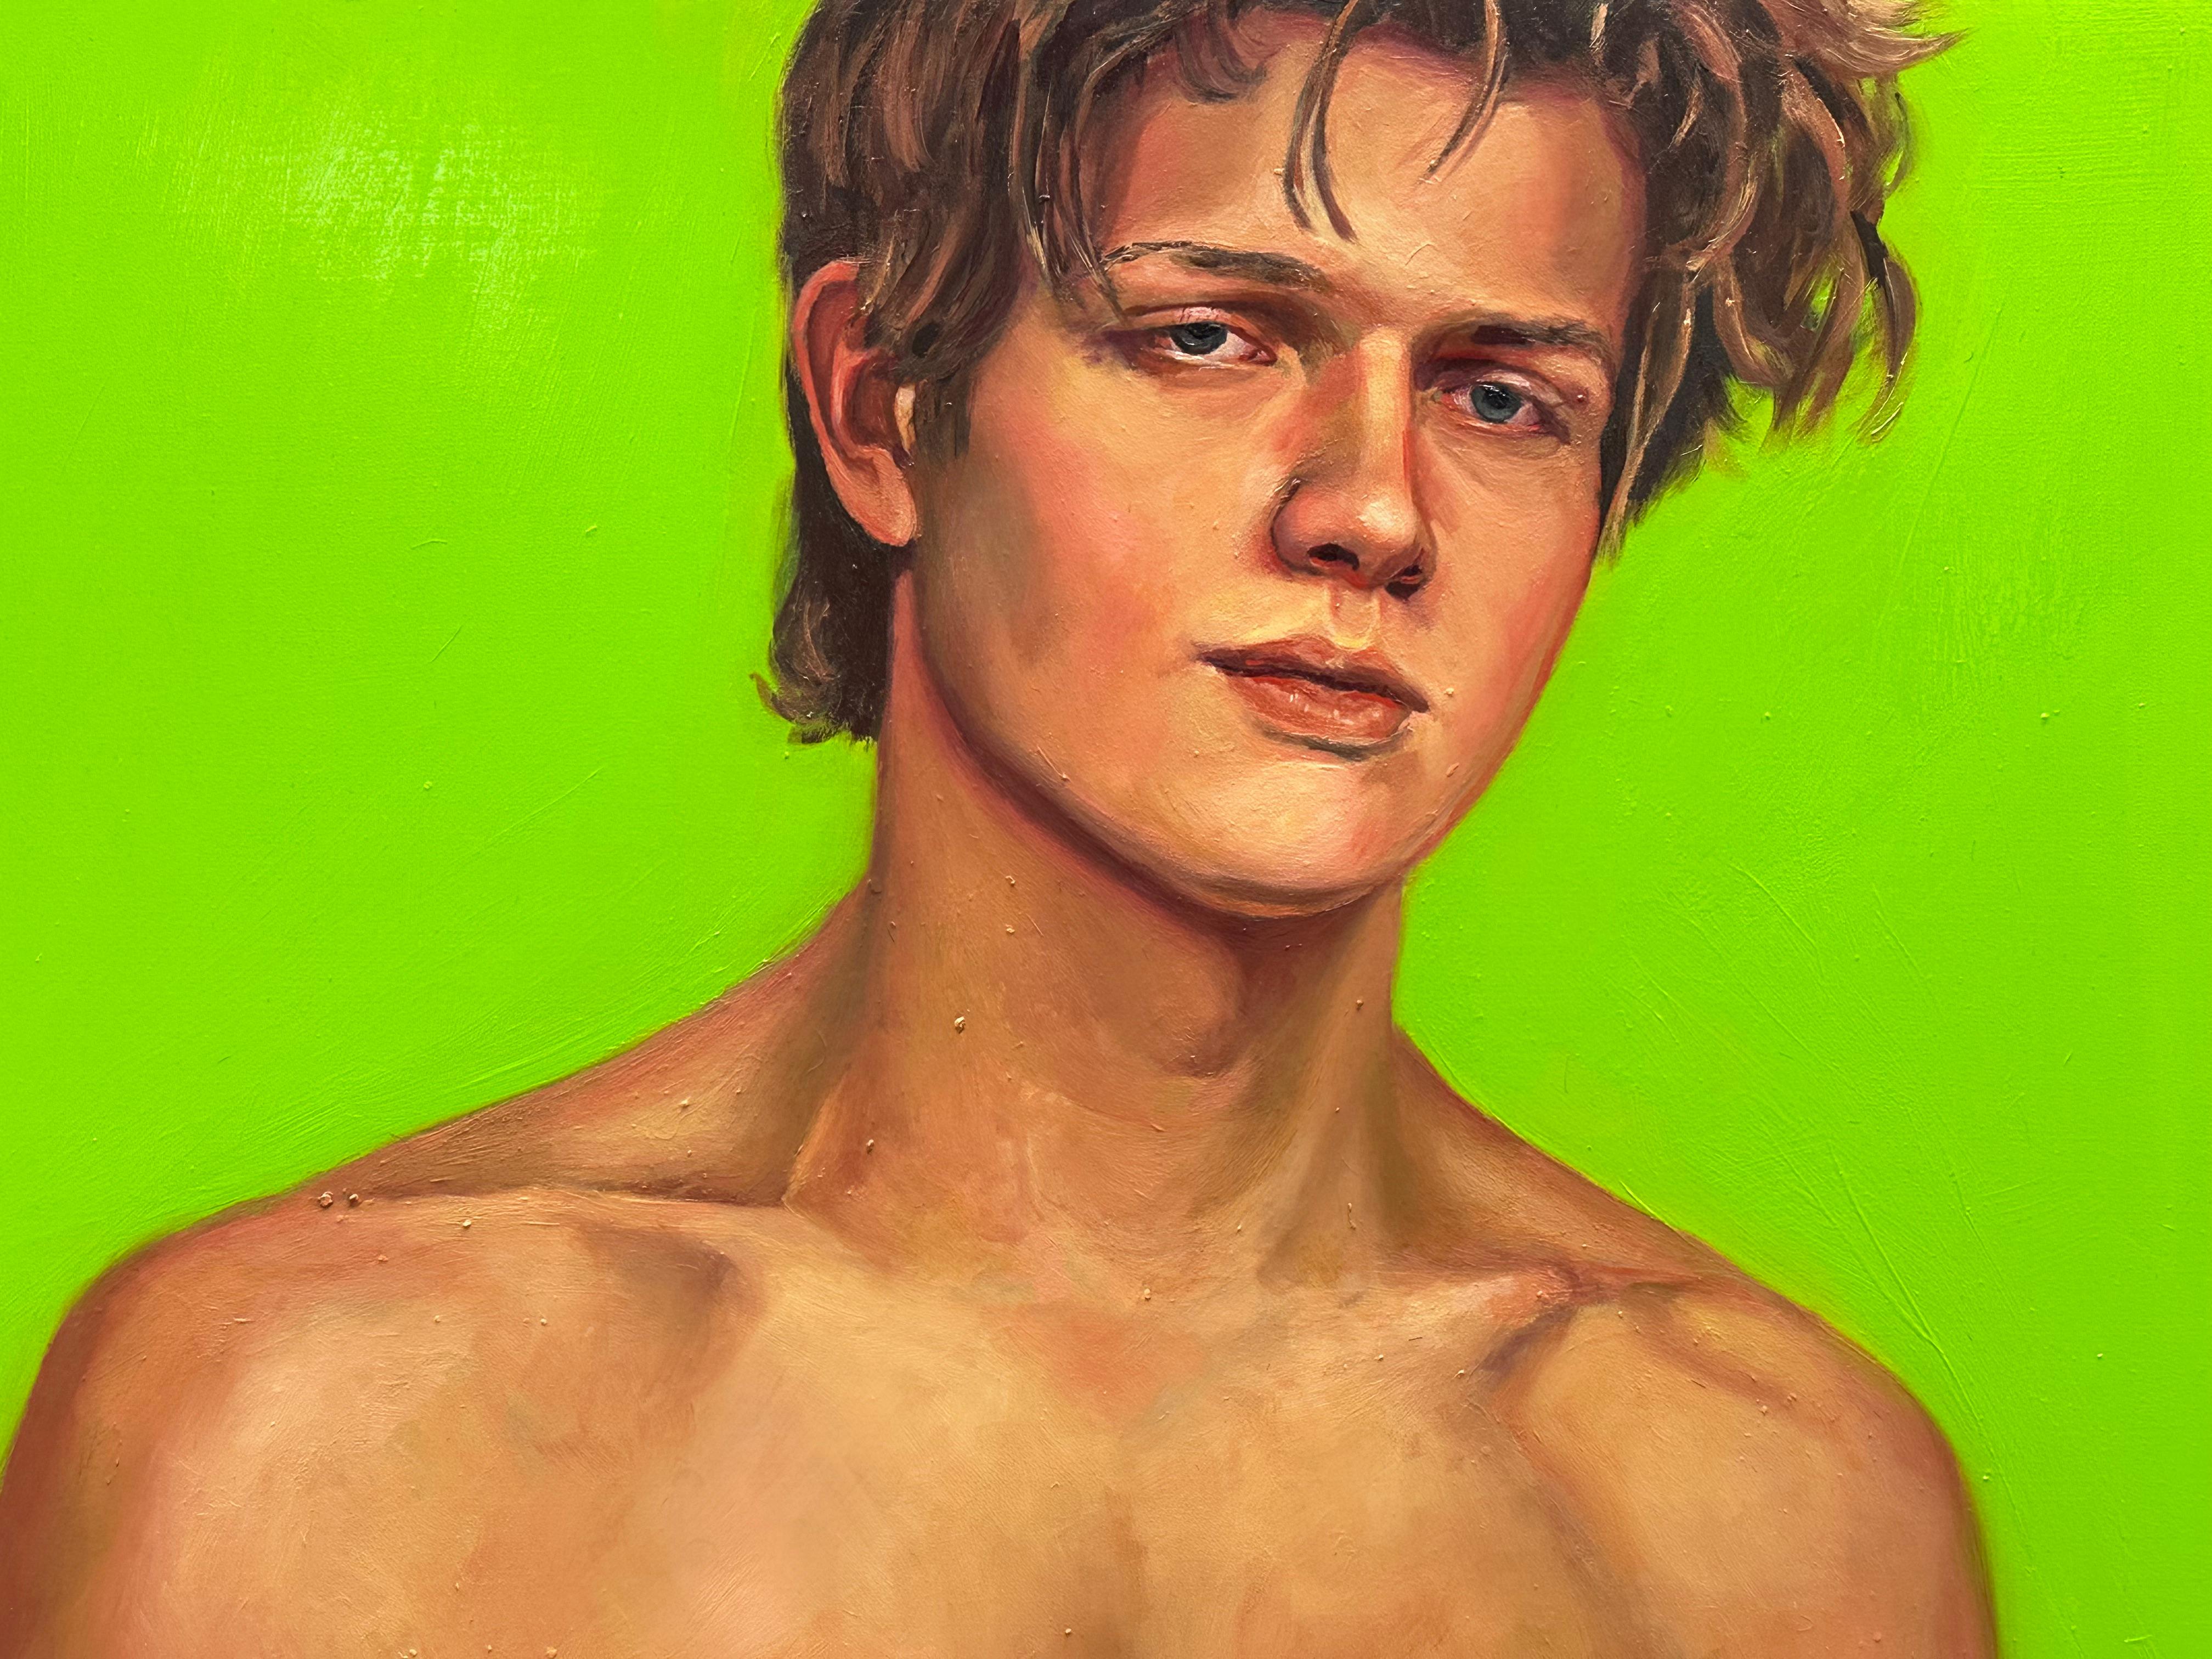 Quand je vis mon rêve - 21e siècle  Peinture contemporaine d'un garçon à la poitrine nue - Vert Figurative Painting par David van der Linden